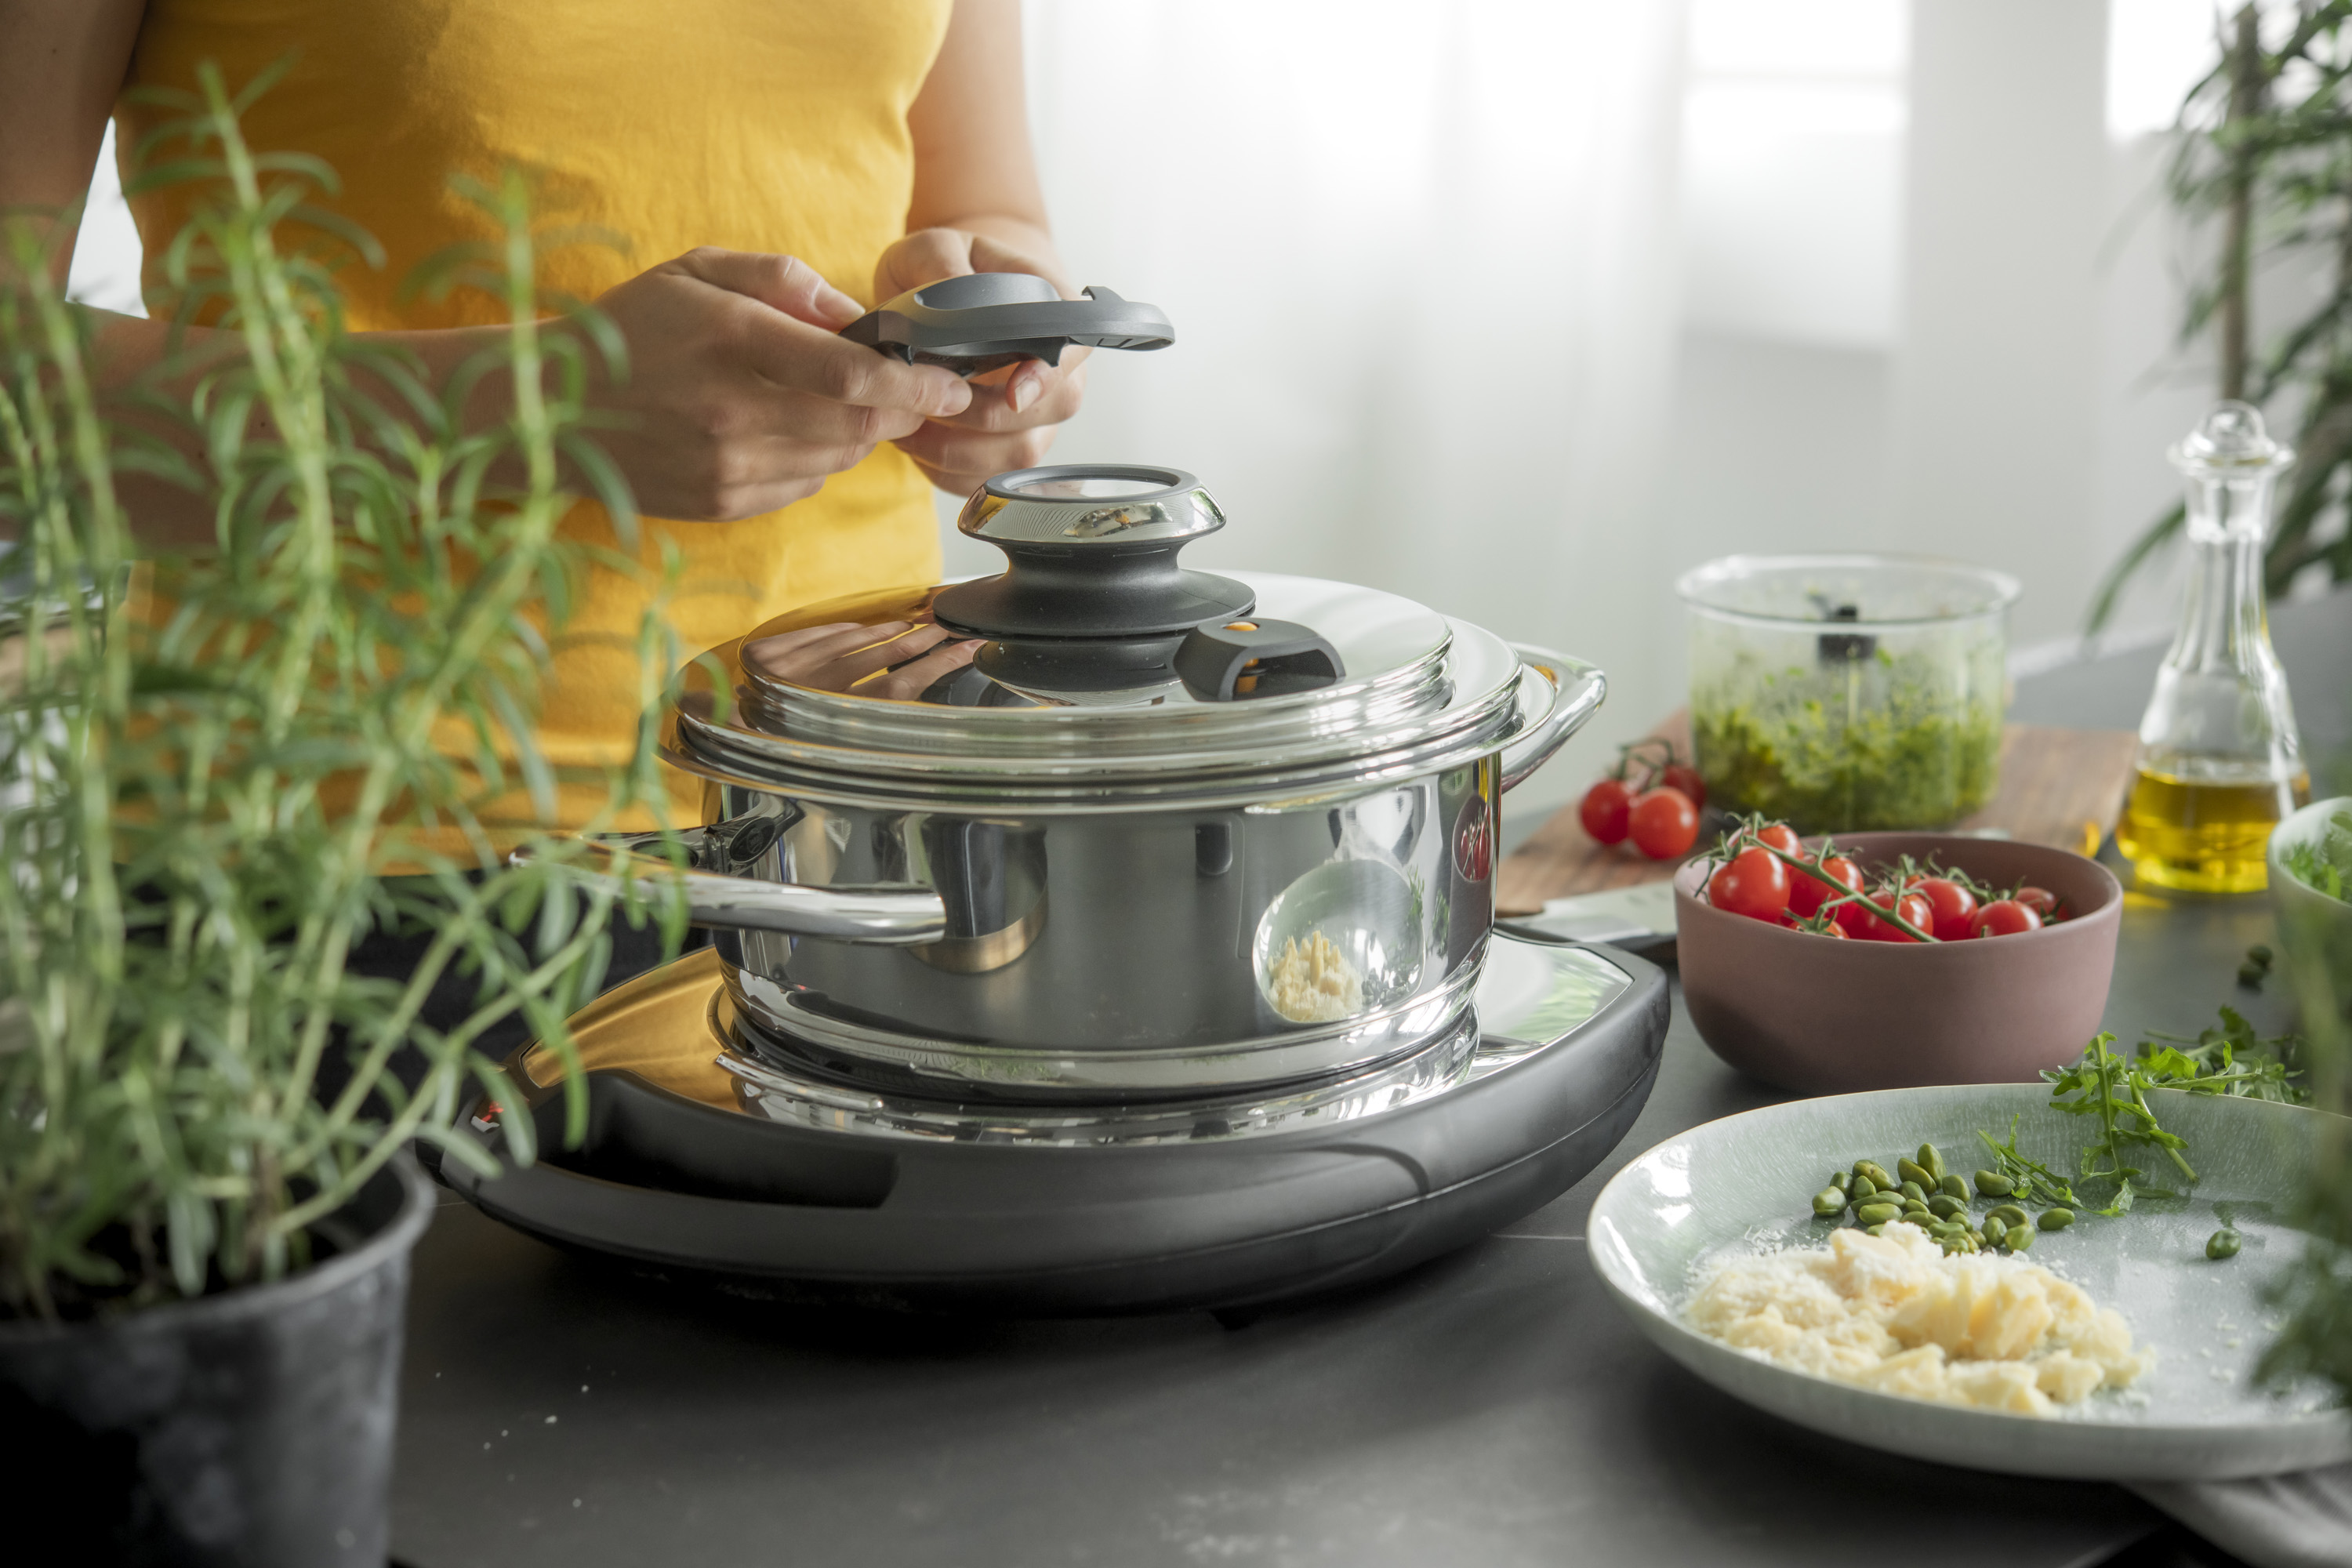 AMC presenta sus sistemas de cocina premium - Noticias de Electro en  Alimarket